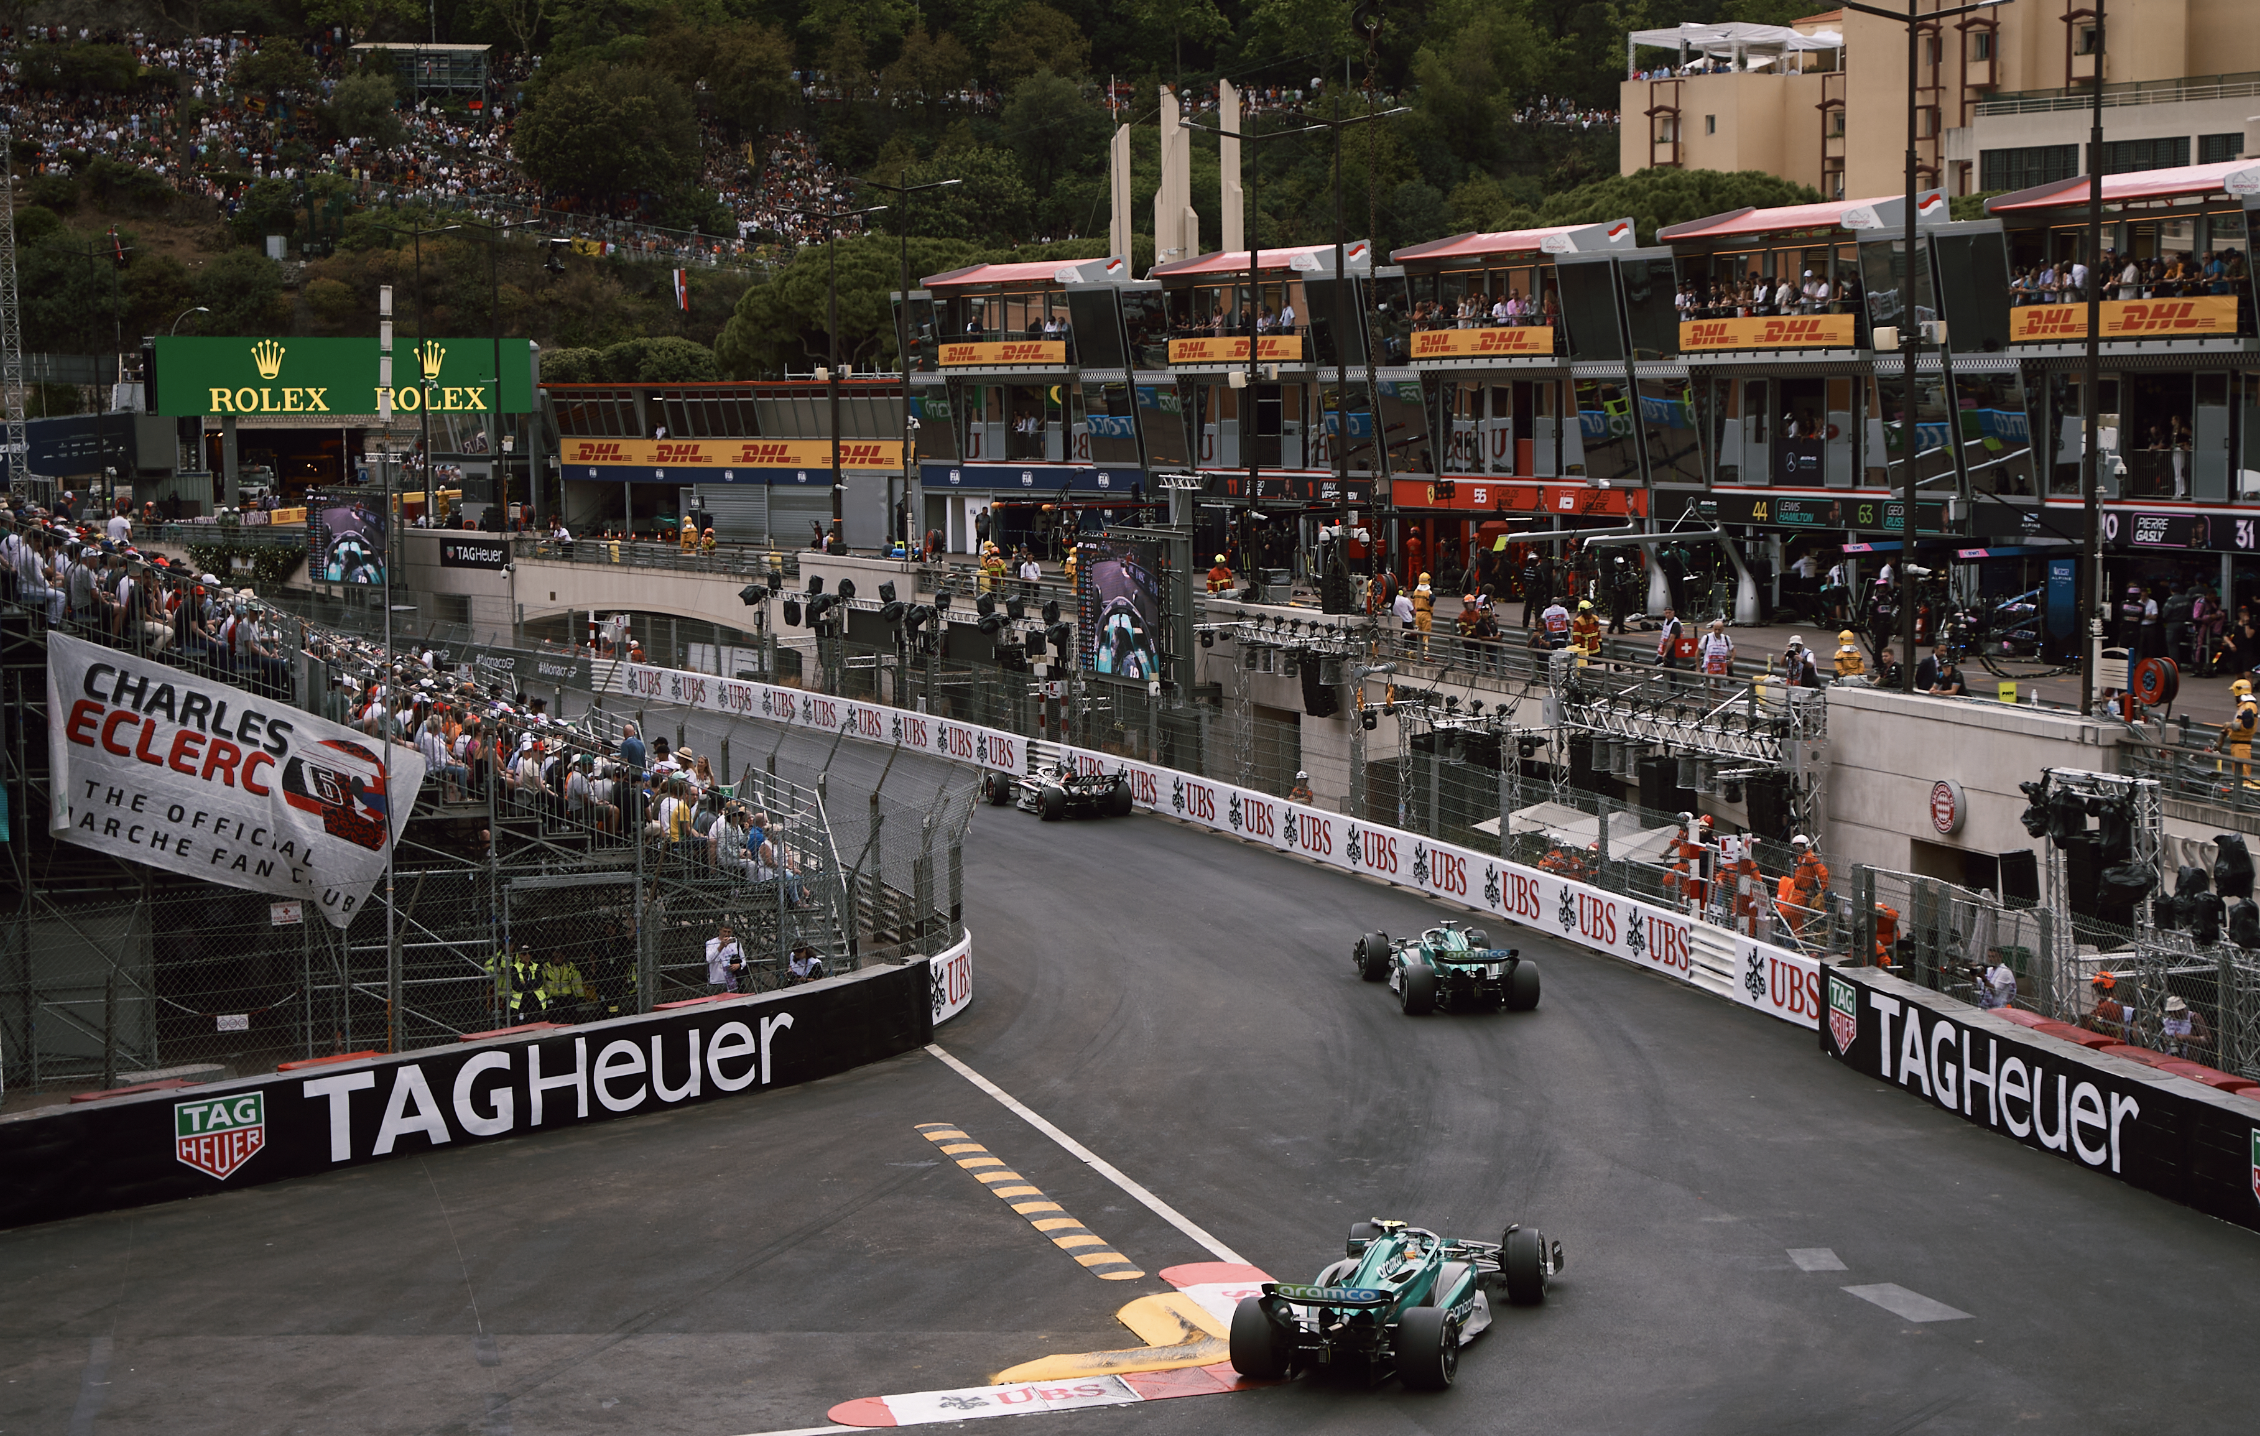 Monaco Grand Prix Tickets